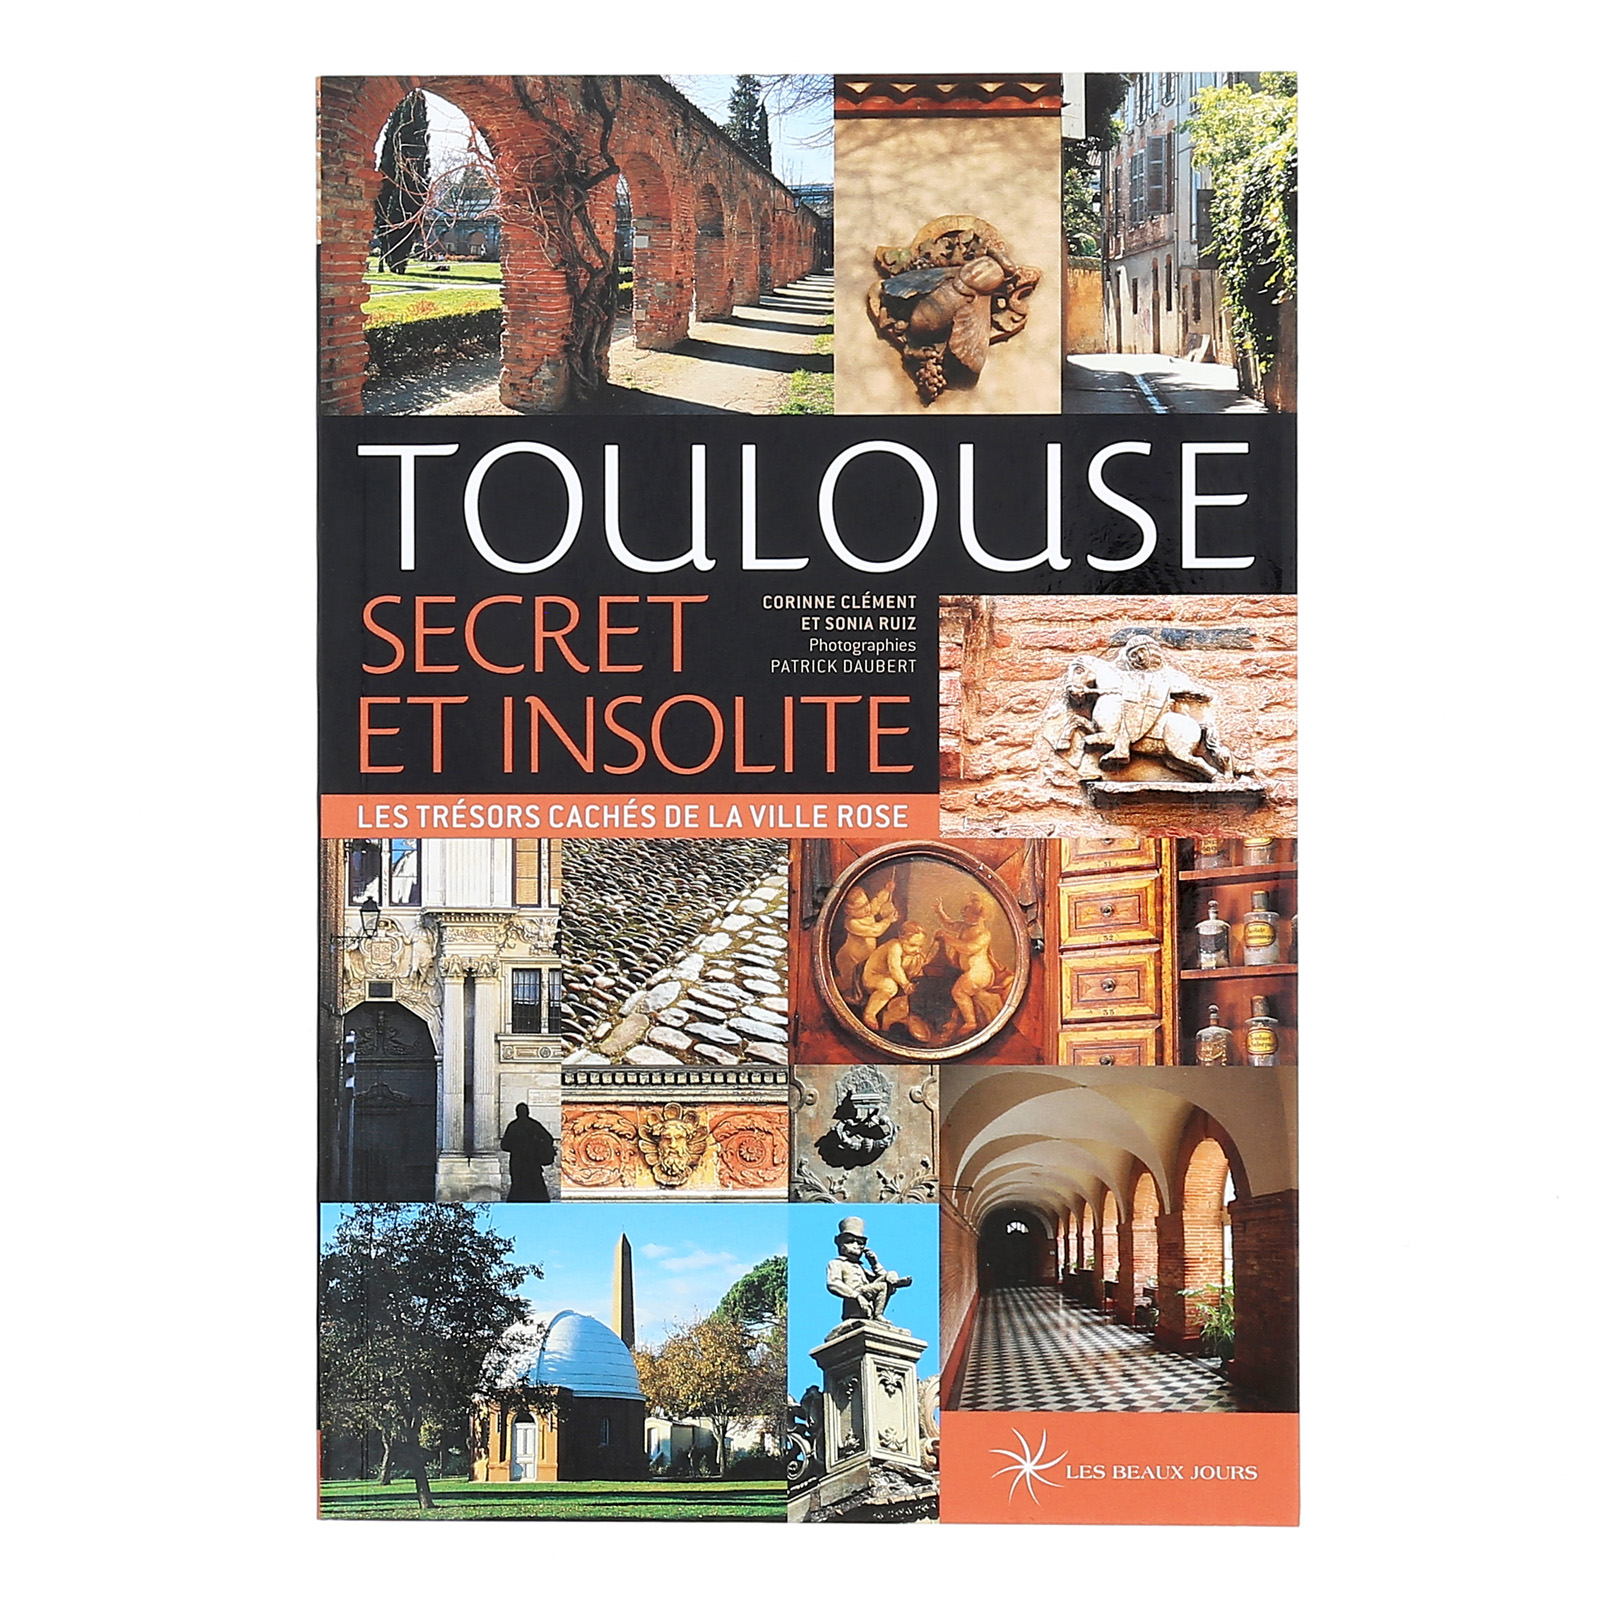 Toulouse secret et insolite